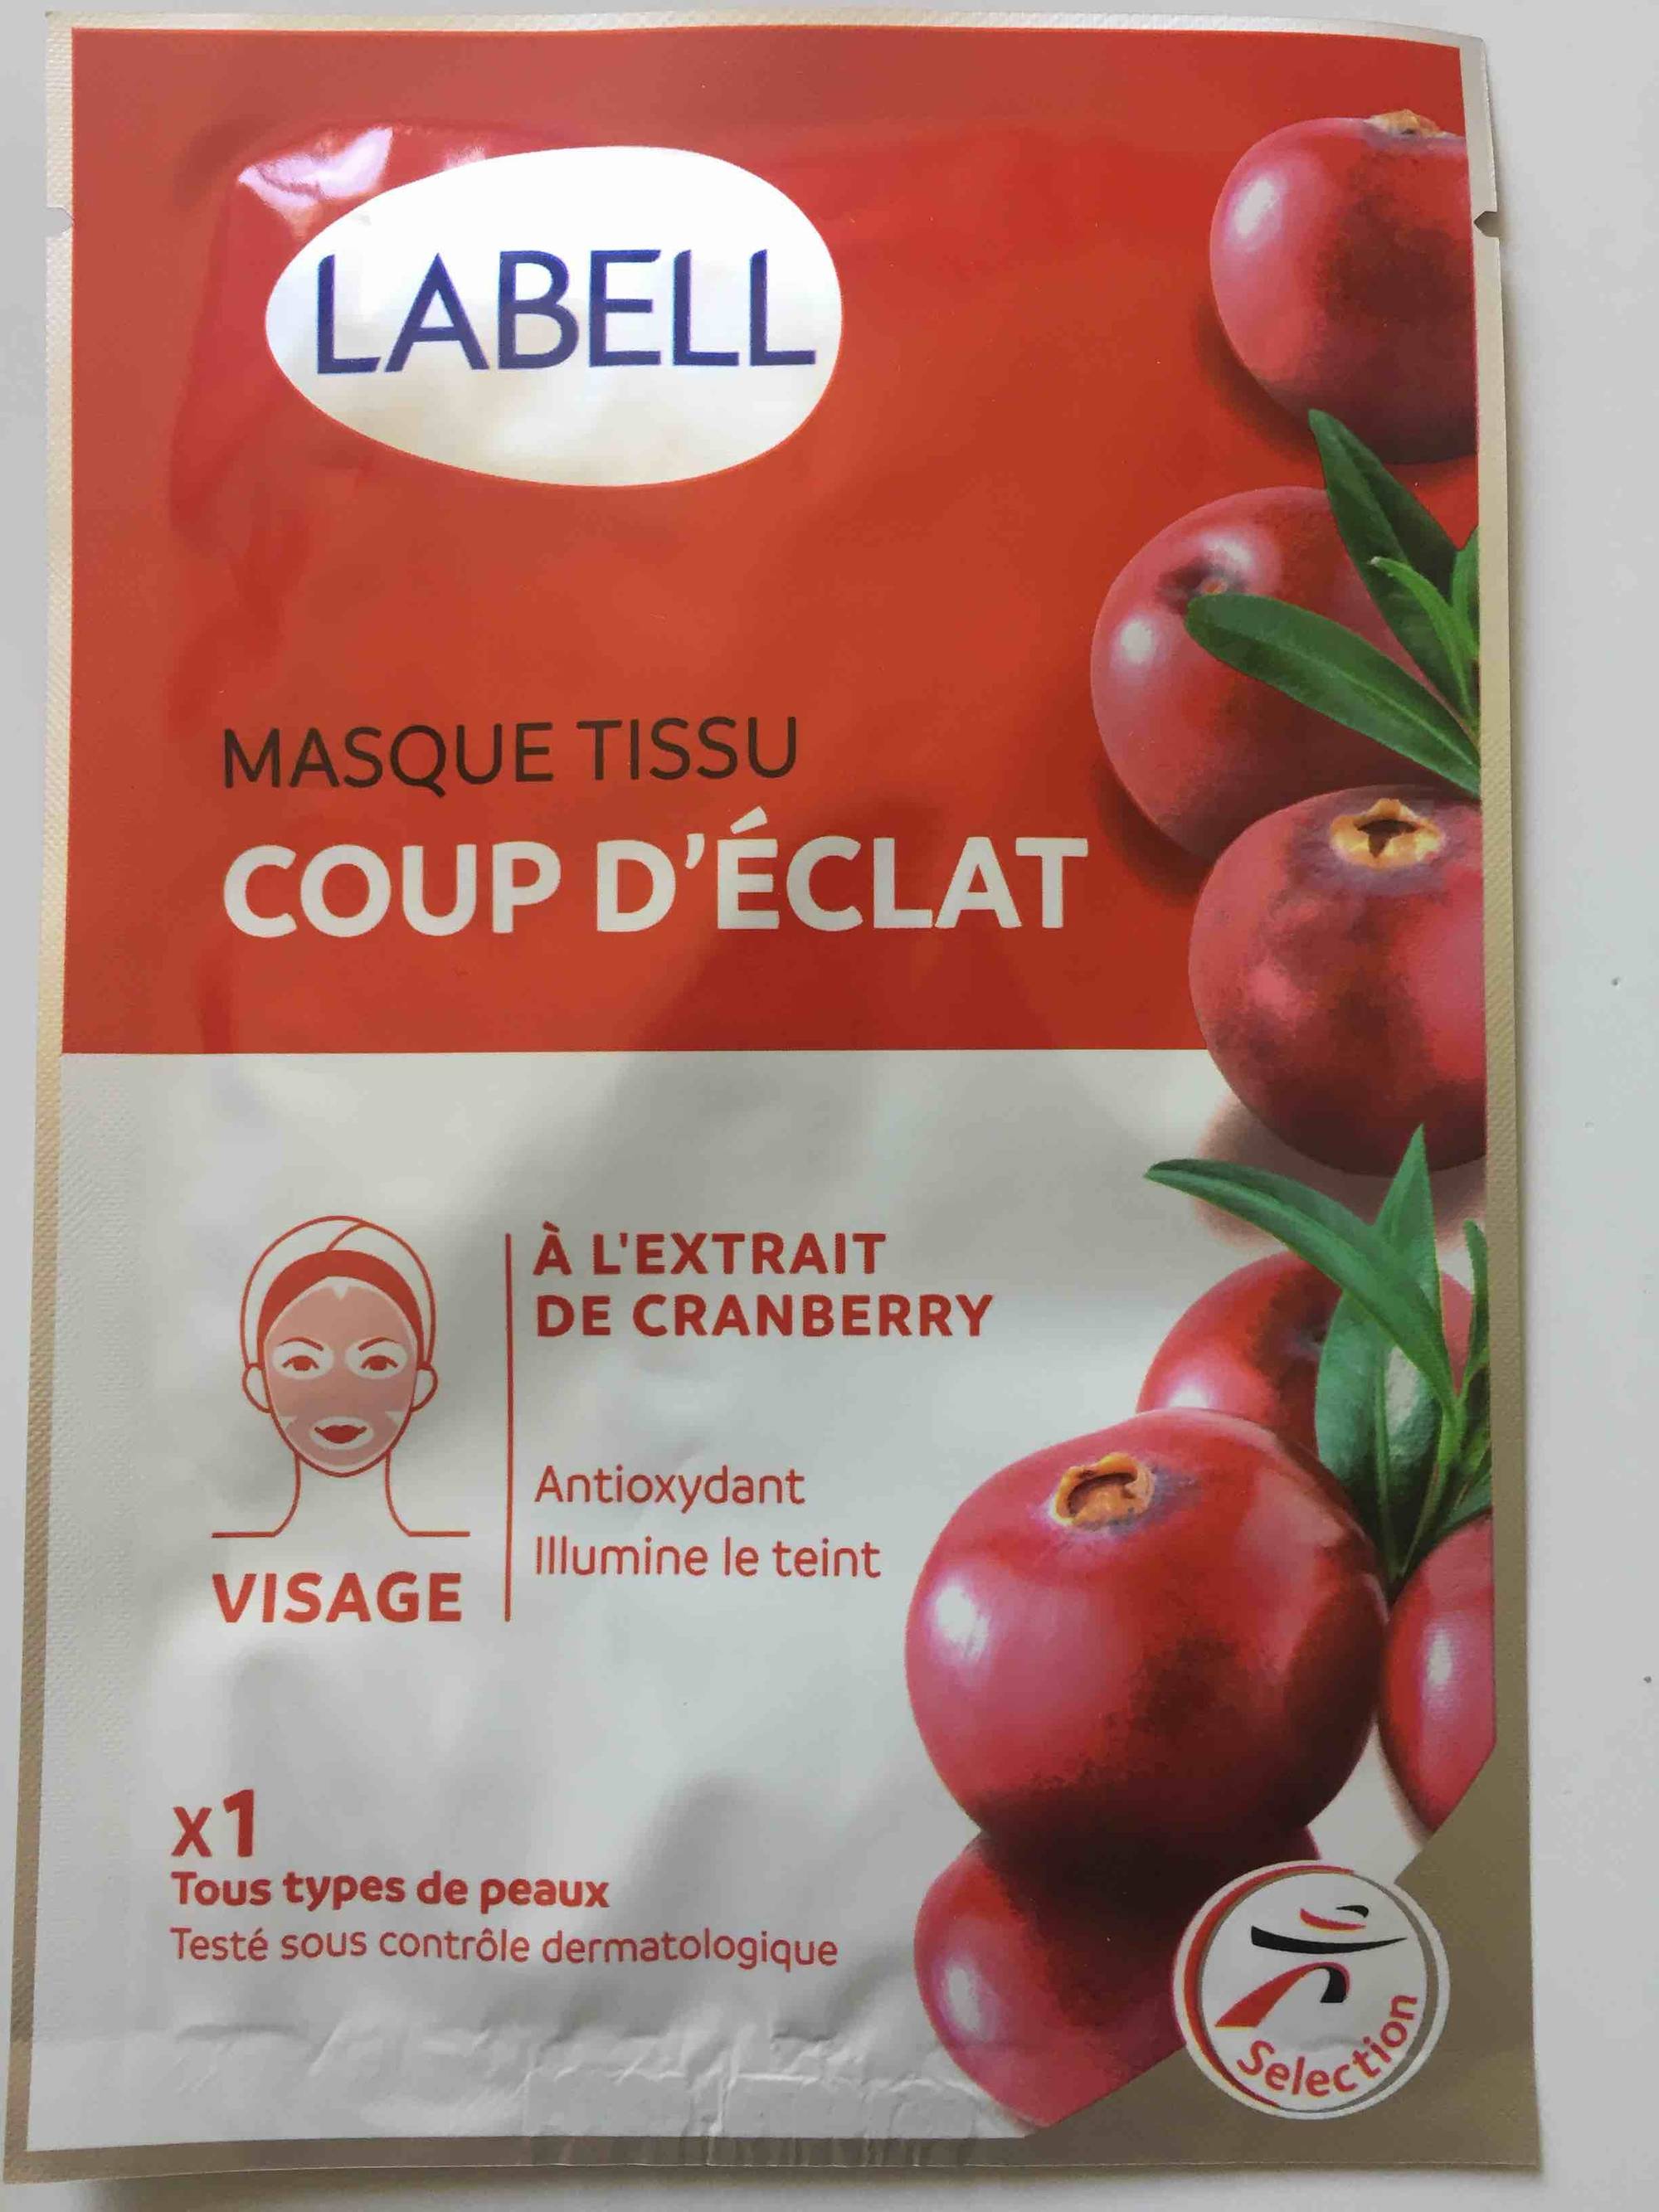 LABELL - Masque tissu coup d'éclat - A l'extrait de cranberry